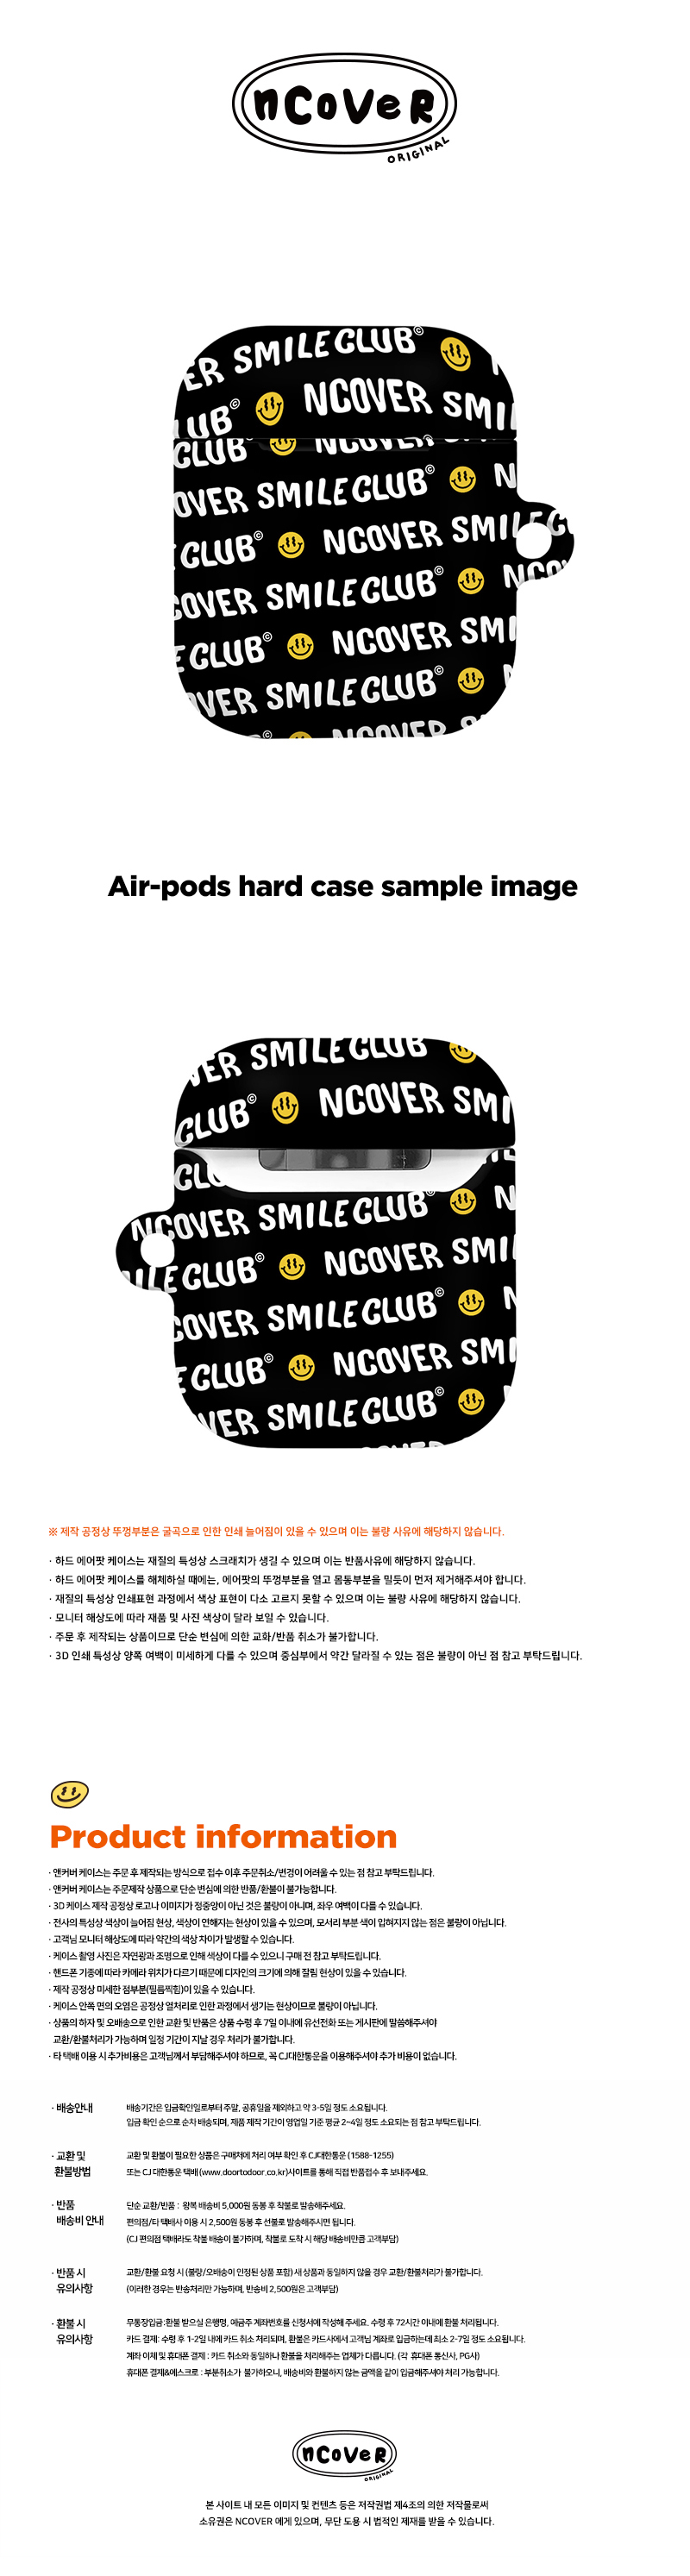 [호환용] Smile club(emoticon)-black(airpods hard)  18,000원 - 바이인터내셔널주식회사 디지털, 이어폰/헤드폰, 이어폰/헤드폰 액세서리, 에어팟/에어팟프로 케이스 바보사랑 [호환용] Smile club(emoticon)-black(airpods hard)  18,000원 - 바이인터내셔널주식회사 디지털, 이어폰/헤드폰, 이어폰/헤드폰 액세서리, 에어팟/에어팟프로 케이스 바보사랑